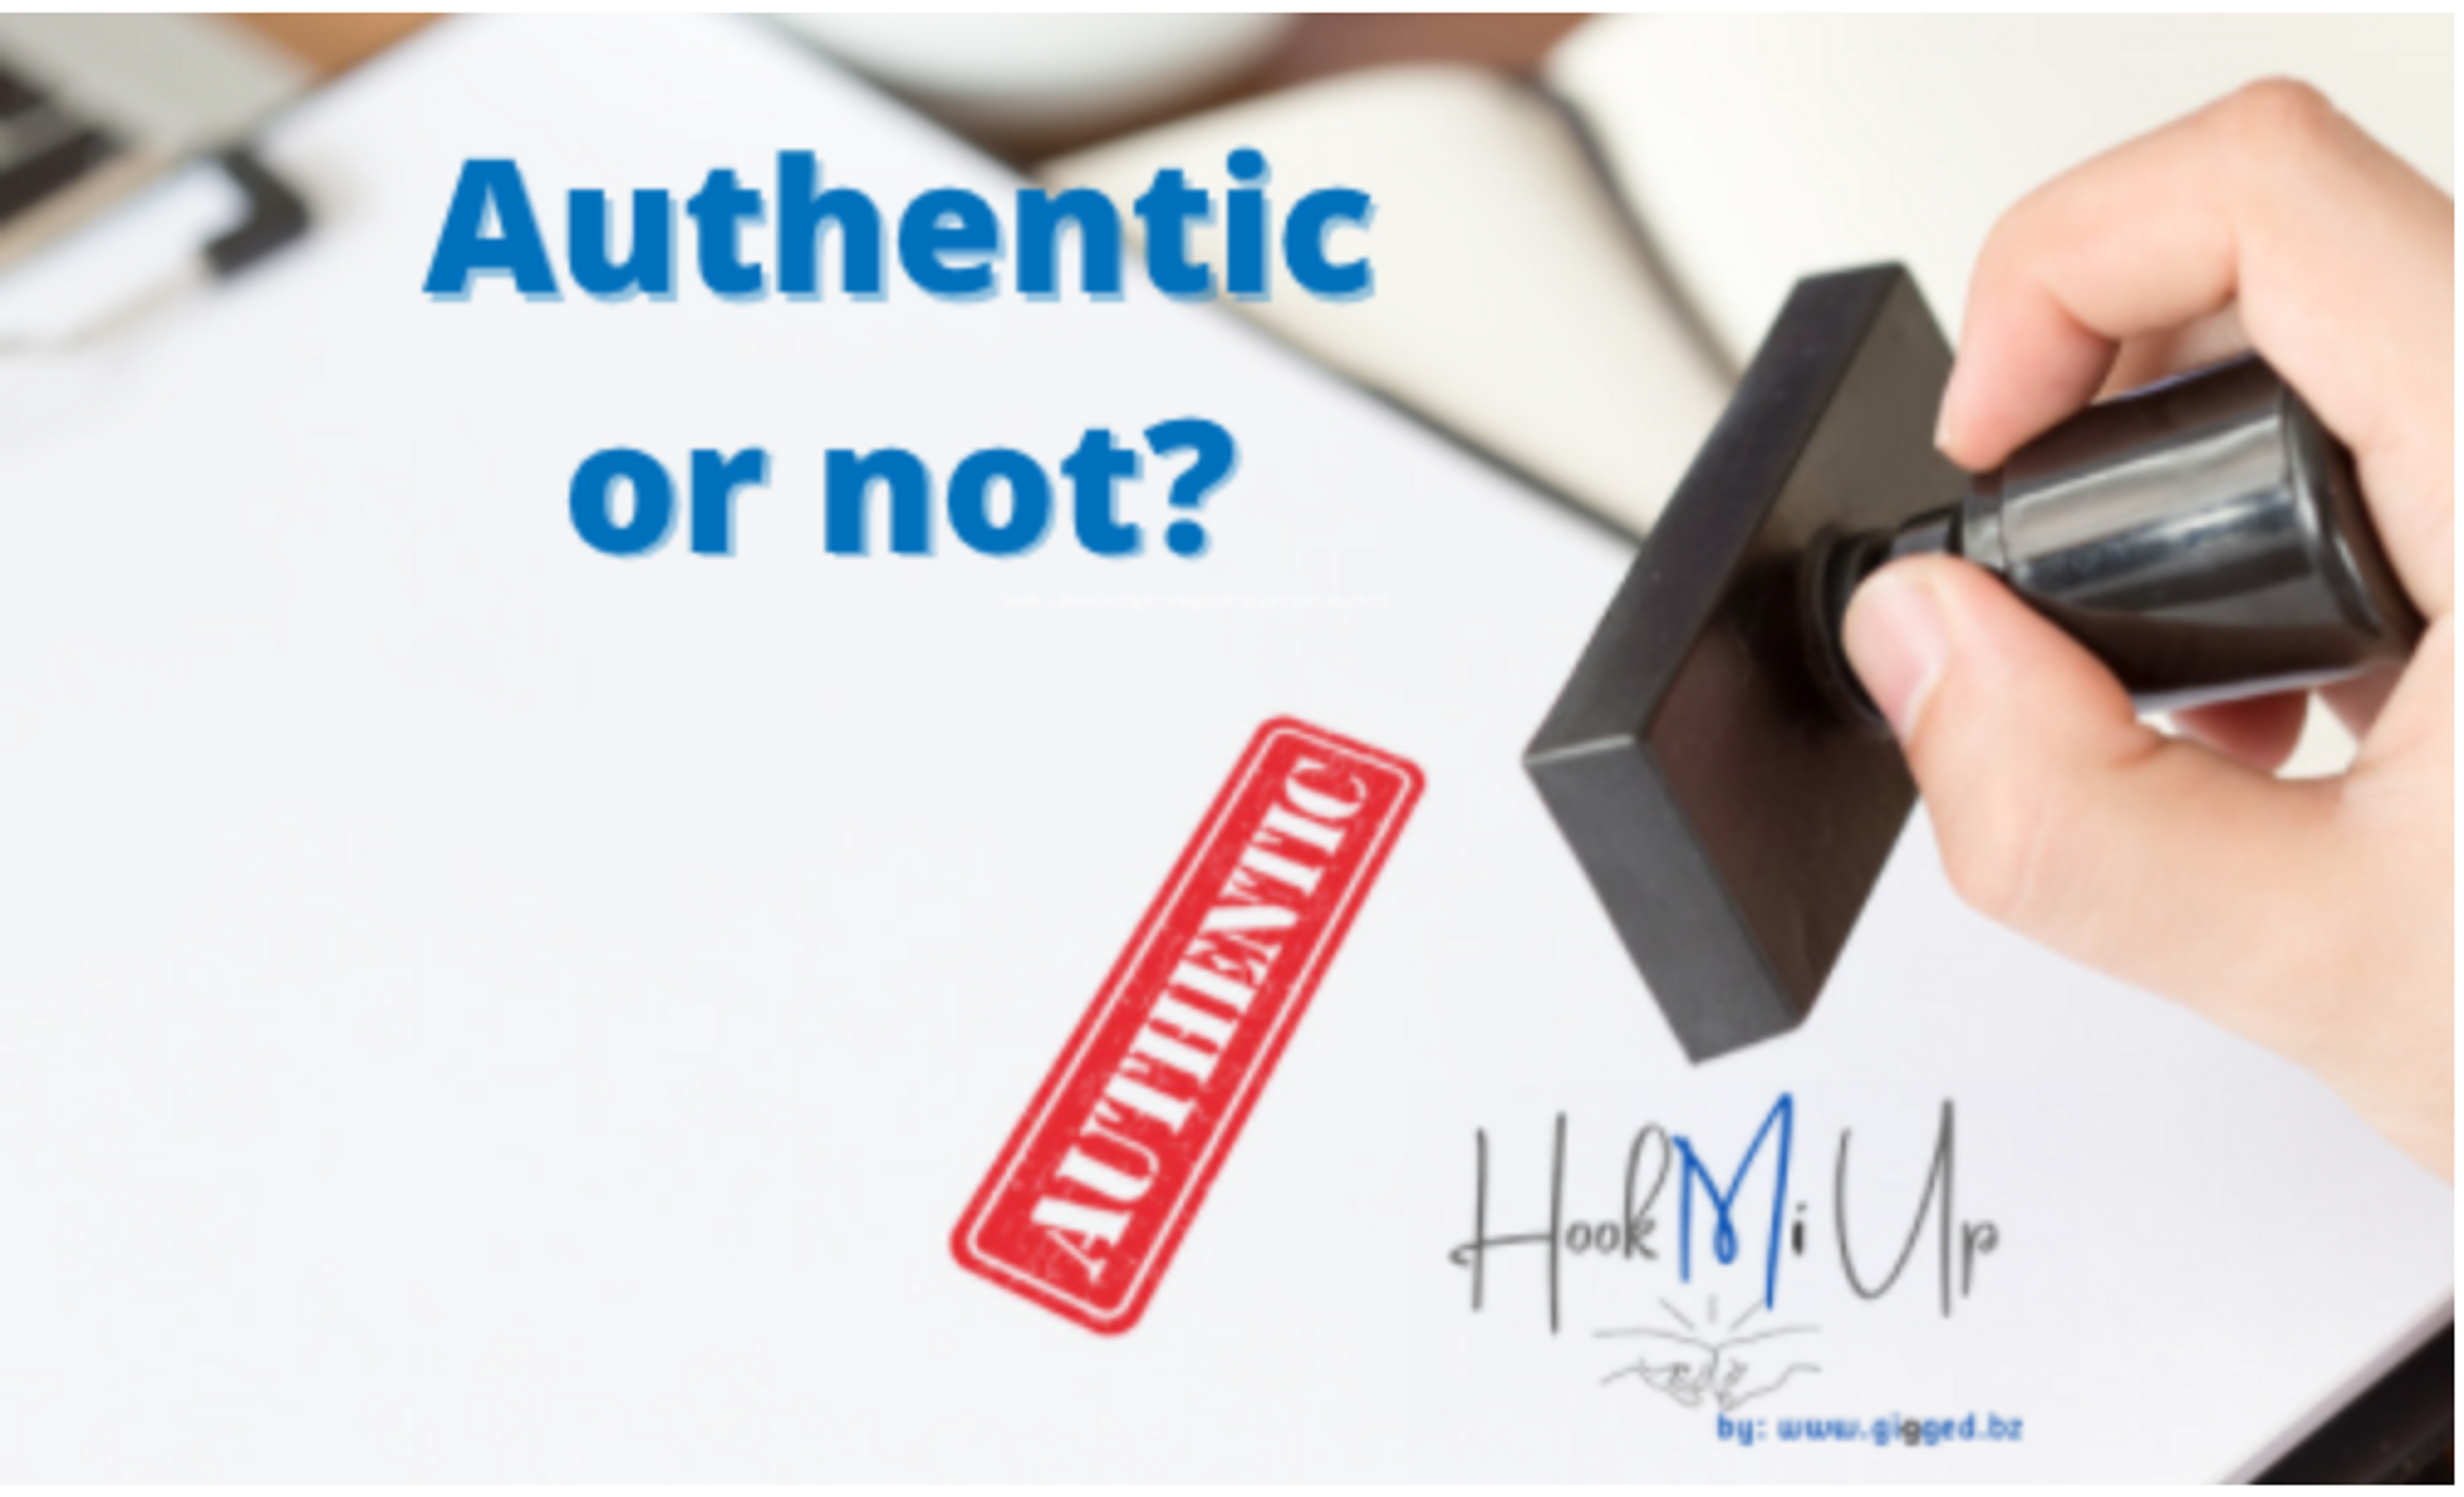 How do you define authenticity